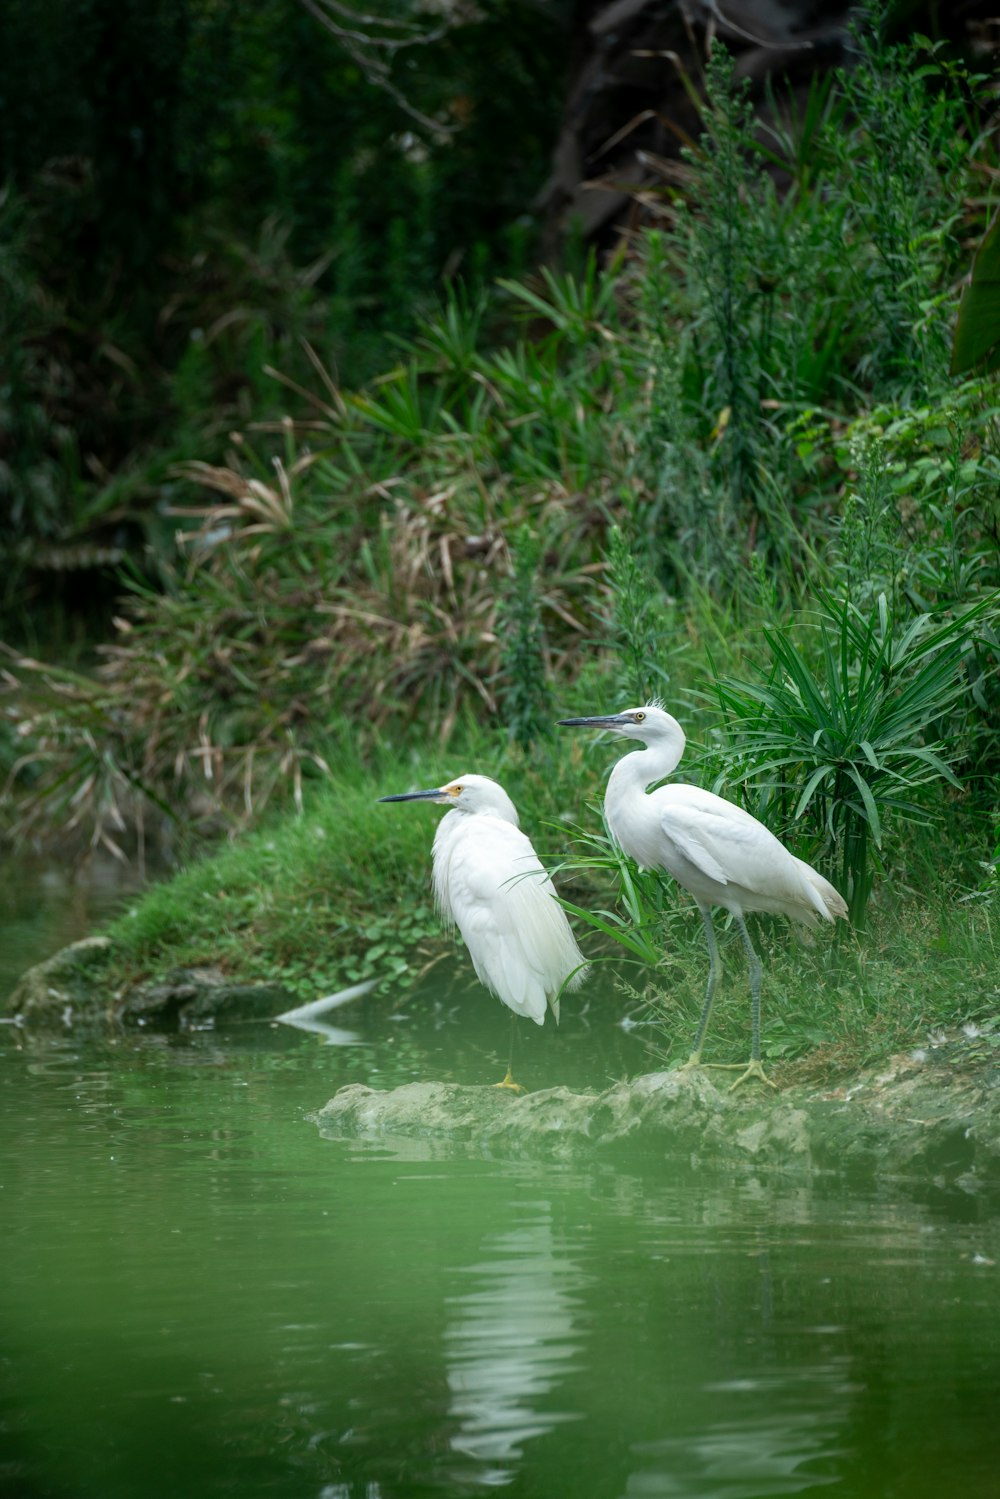 물줄기 옆에 서 있는 두 마리의 하얀 새